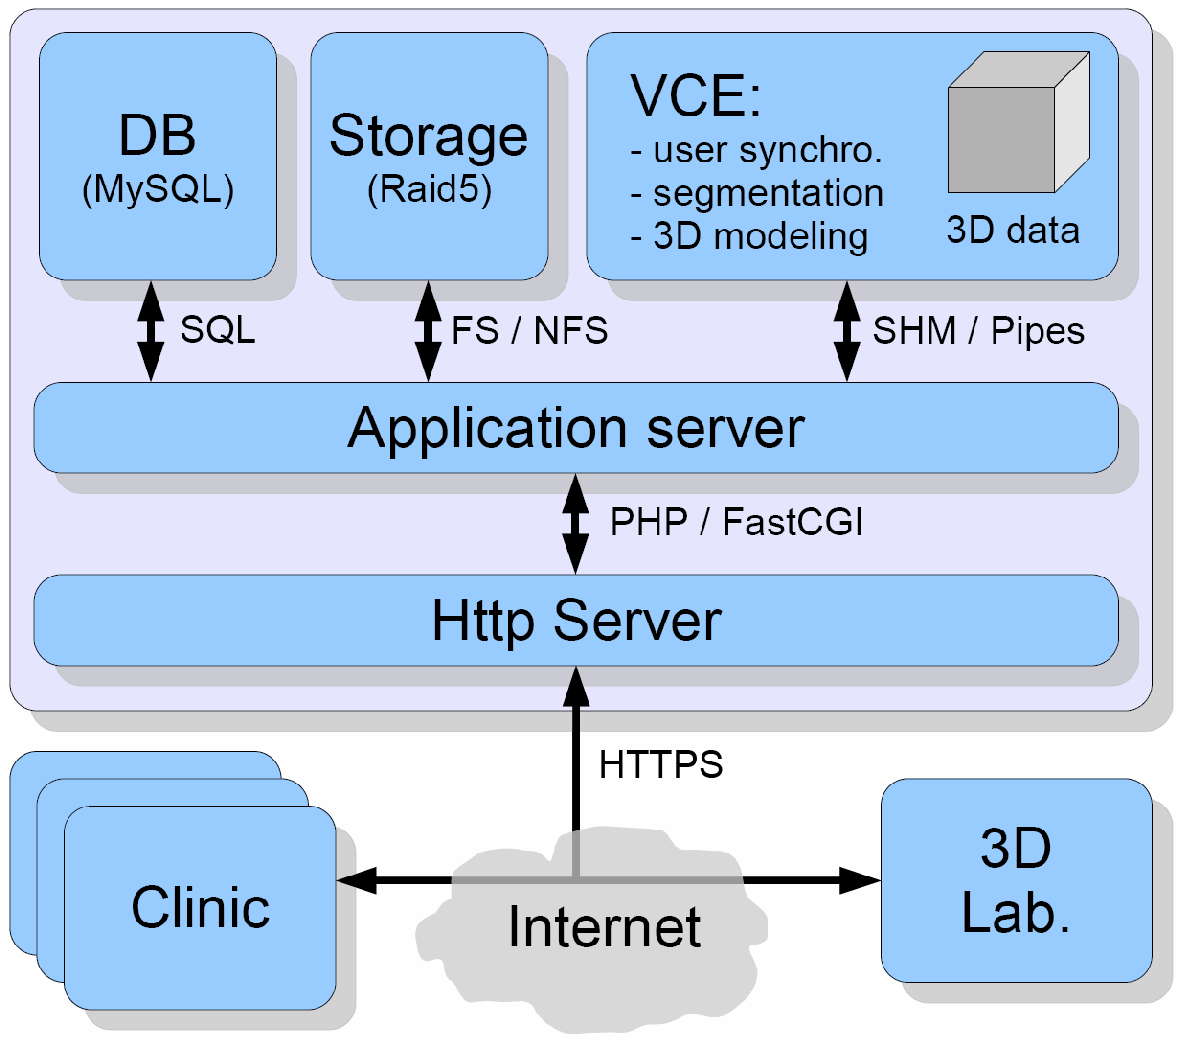 3.2 Architektura Klient-Server: Z výše uvedených důvodů jsme při návrhu dalšího VCE systému přešli na třívrstvou architekturu Klient-Server (viz. Obr. 3).